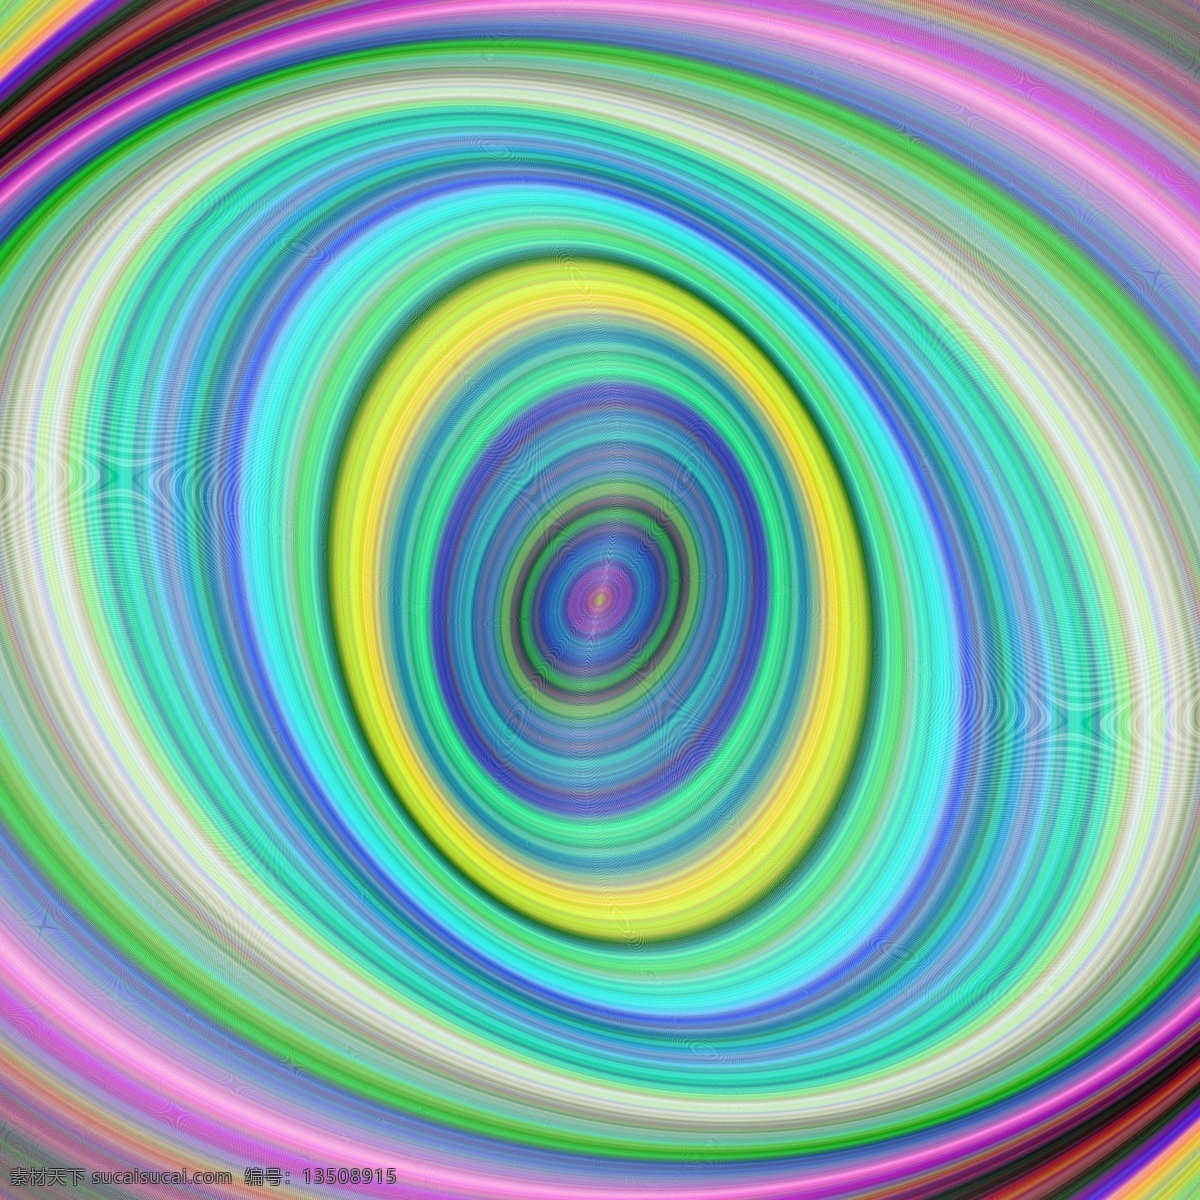 彩色 数字 椭圆 分 形 艺术 背景 宣传册 抽象背景 抽象 装饰 电脑 模板 几何 宣传册模板 墙纸 色彩 图形 几何背景 漩涡 丰富多彩